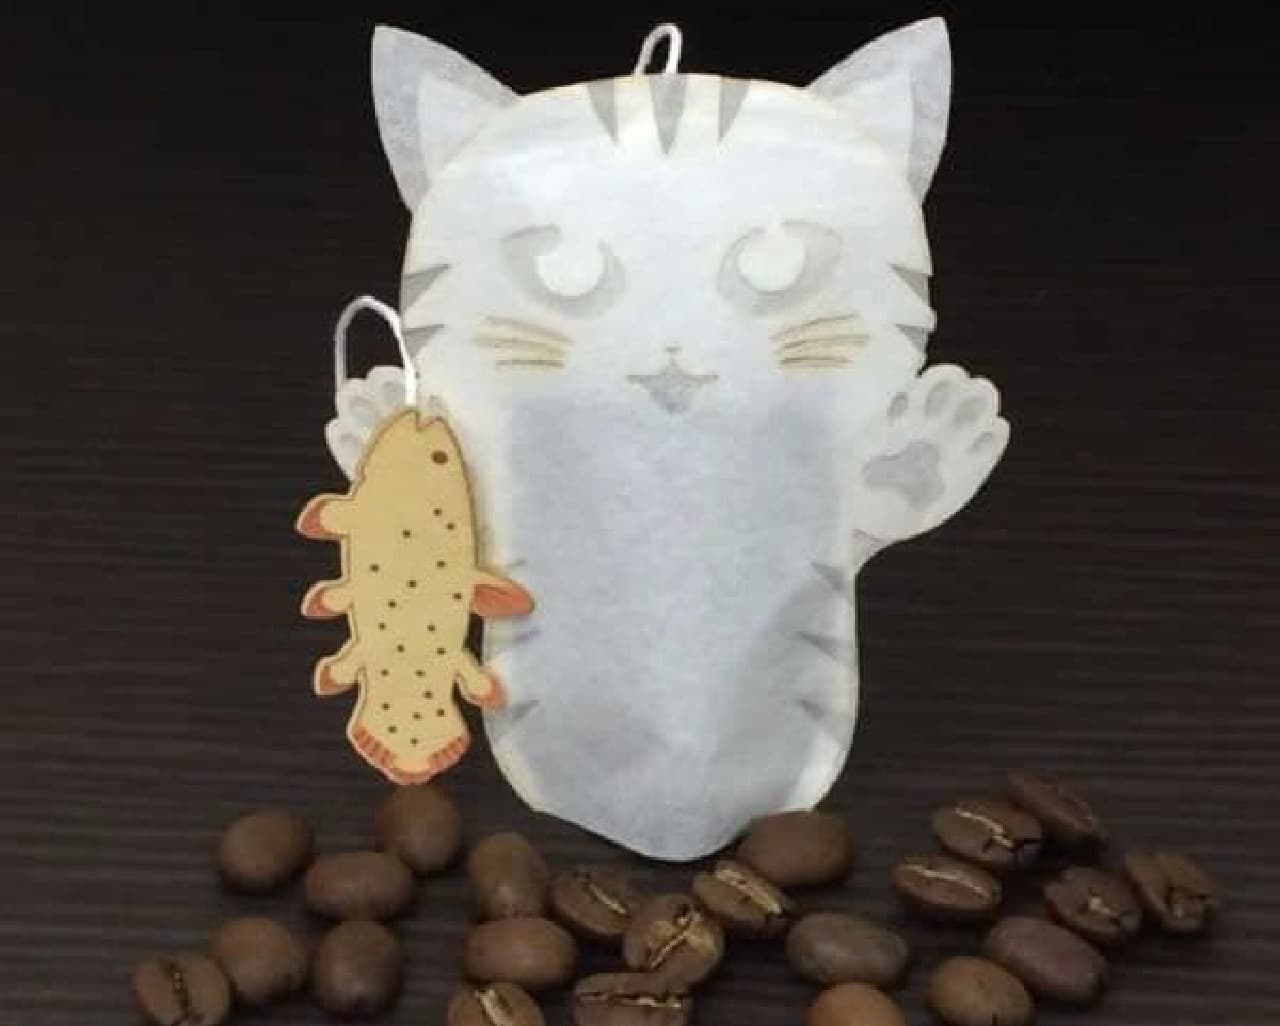 「深海パン職人猫のコーヒーバッグ」は猫のかたちをしたコーヒーバッグ